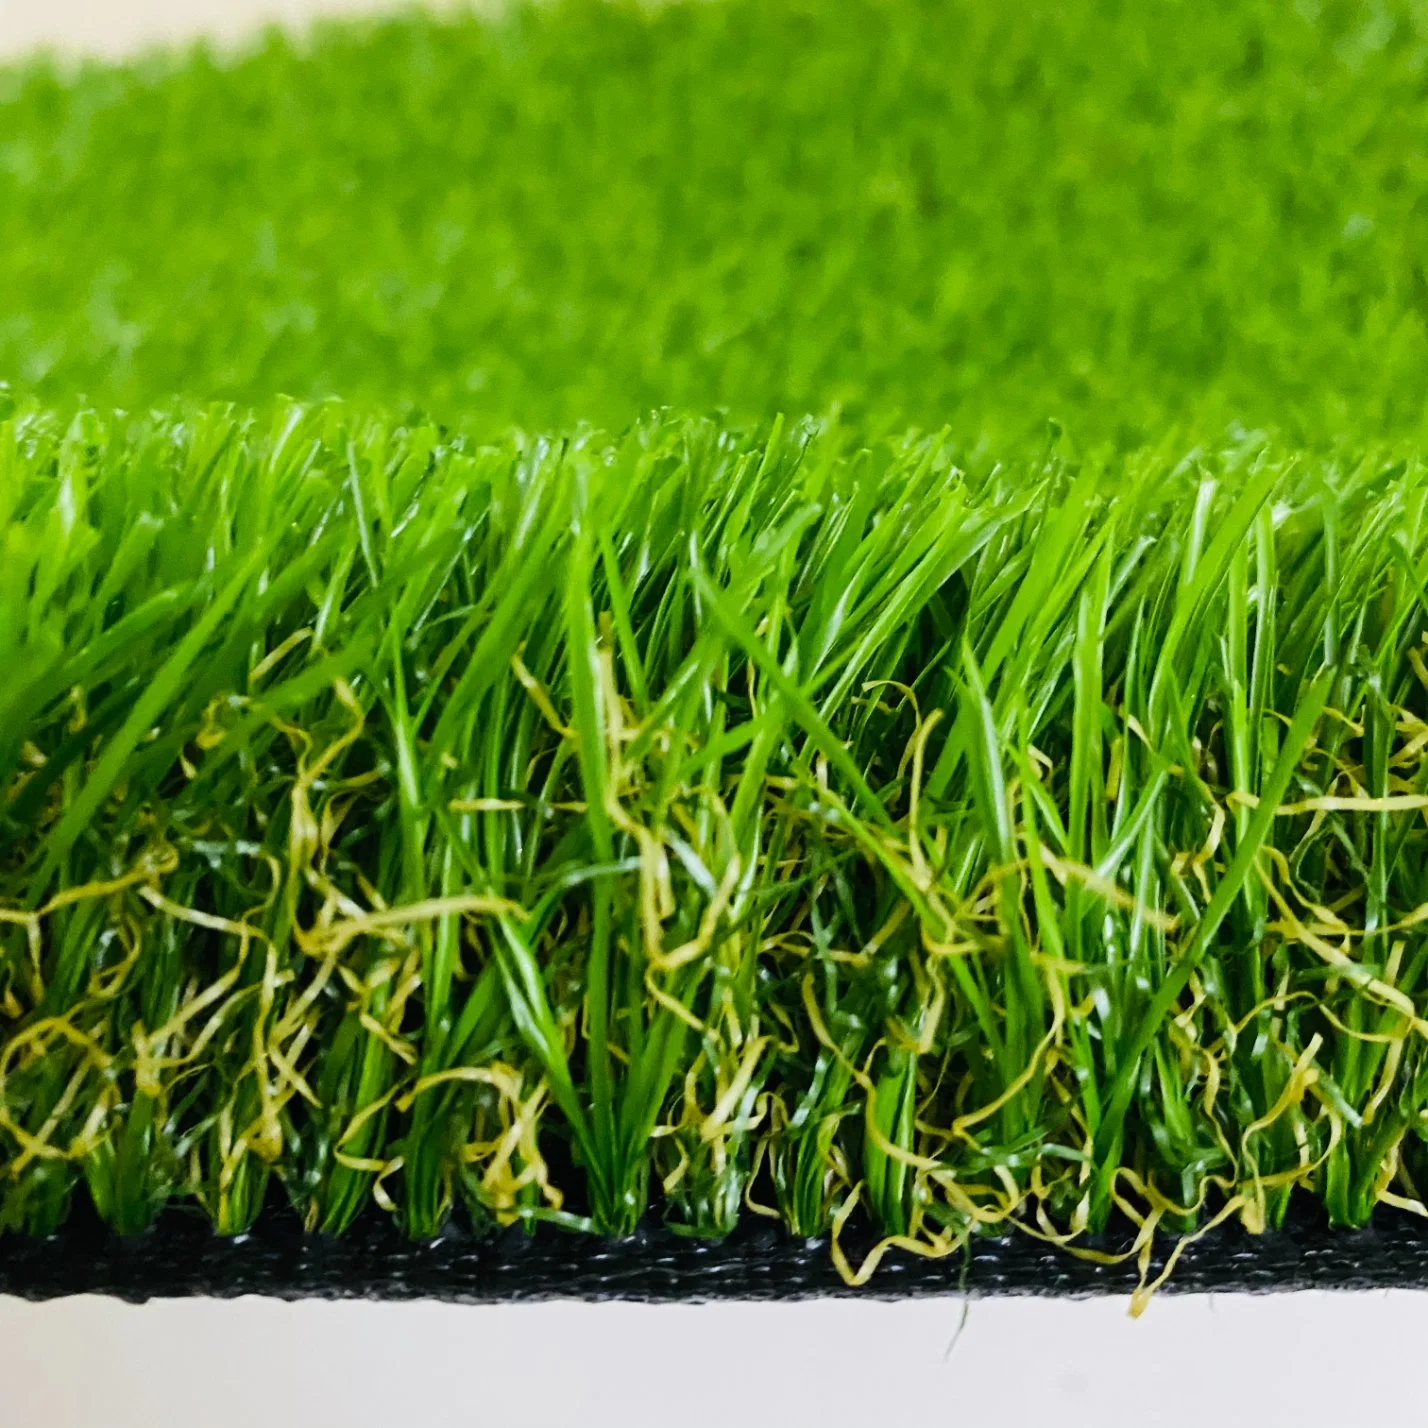 Prix de gros d'usine Gazon synthétique vert en herbe artificielle Tapis de pelouse de jardin Gazon synthétique pour paysage Football Soccer Golf Sports Gazon synthétique